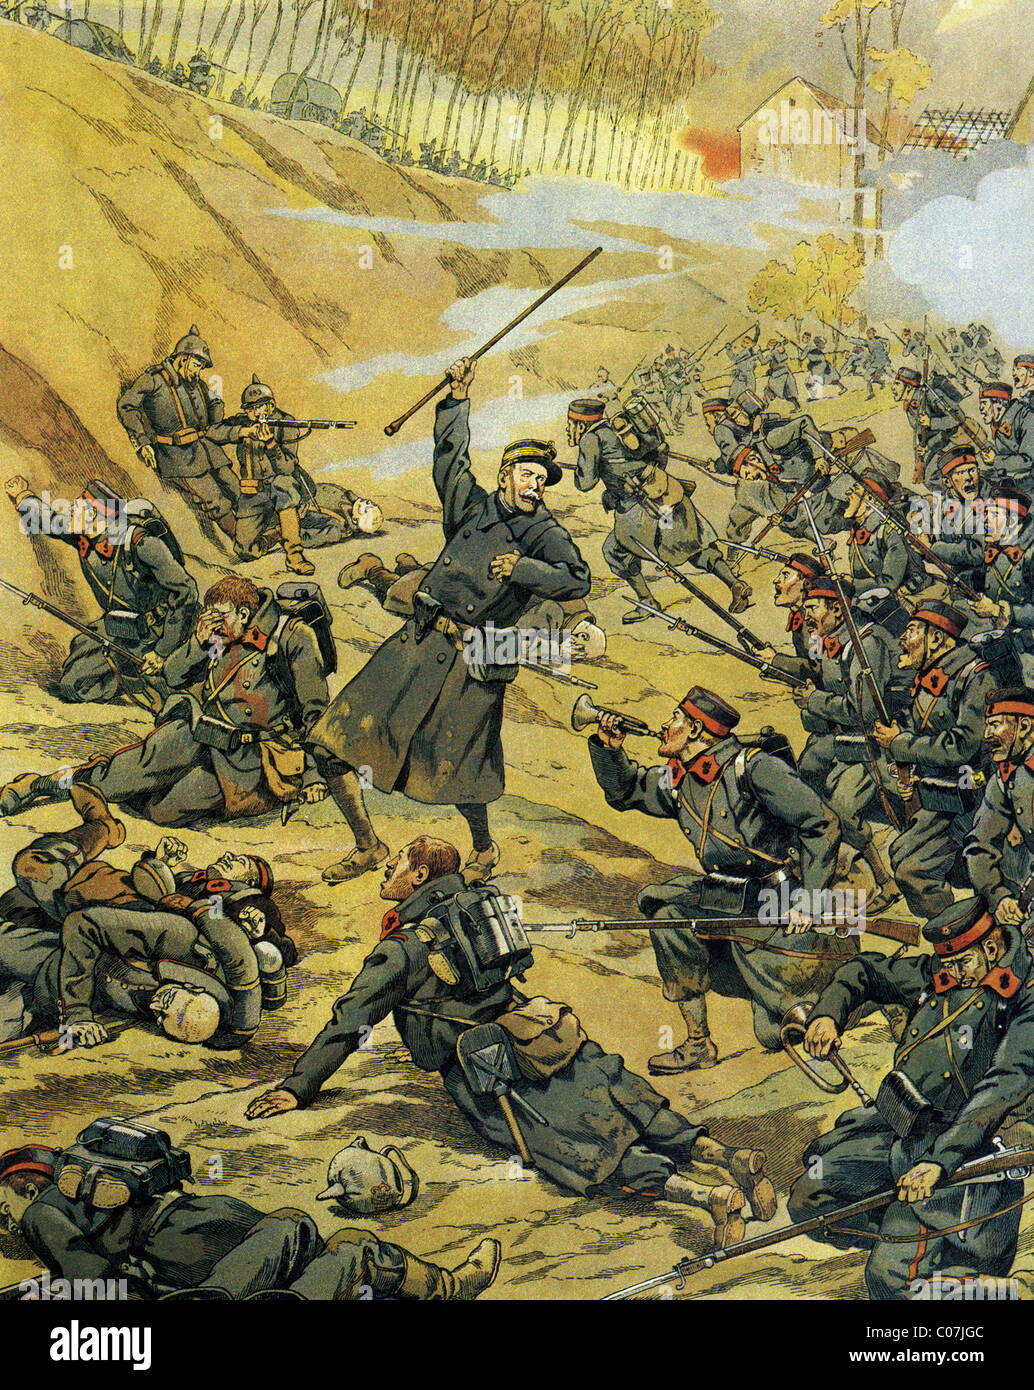 Travail (Jacques Onfroy de Bréville) - Illustrateur français (1858 - 1931) Première Guerre mondiale - 1914-1918 : Bataille en Belgique Banque D'Images